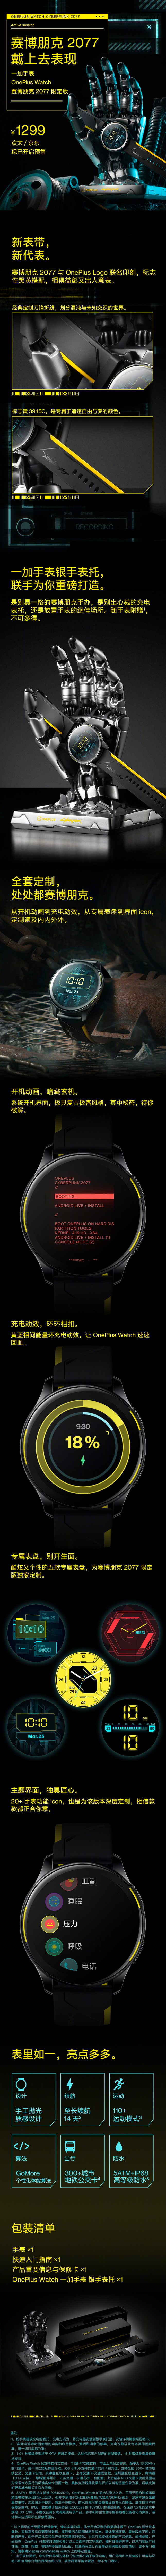 الإصدار المحدود من OnePlus Watch Cyberpunk 2077 متاح الآن للطلب المسبق في الصين مع حامل رائع على شكل يد